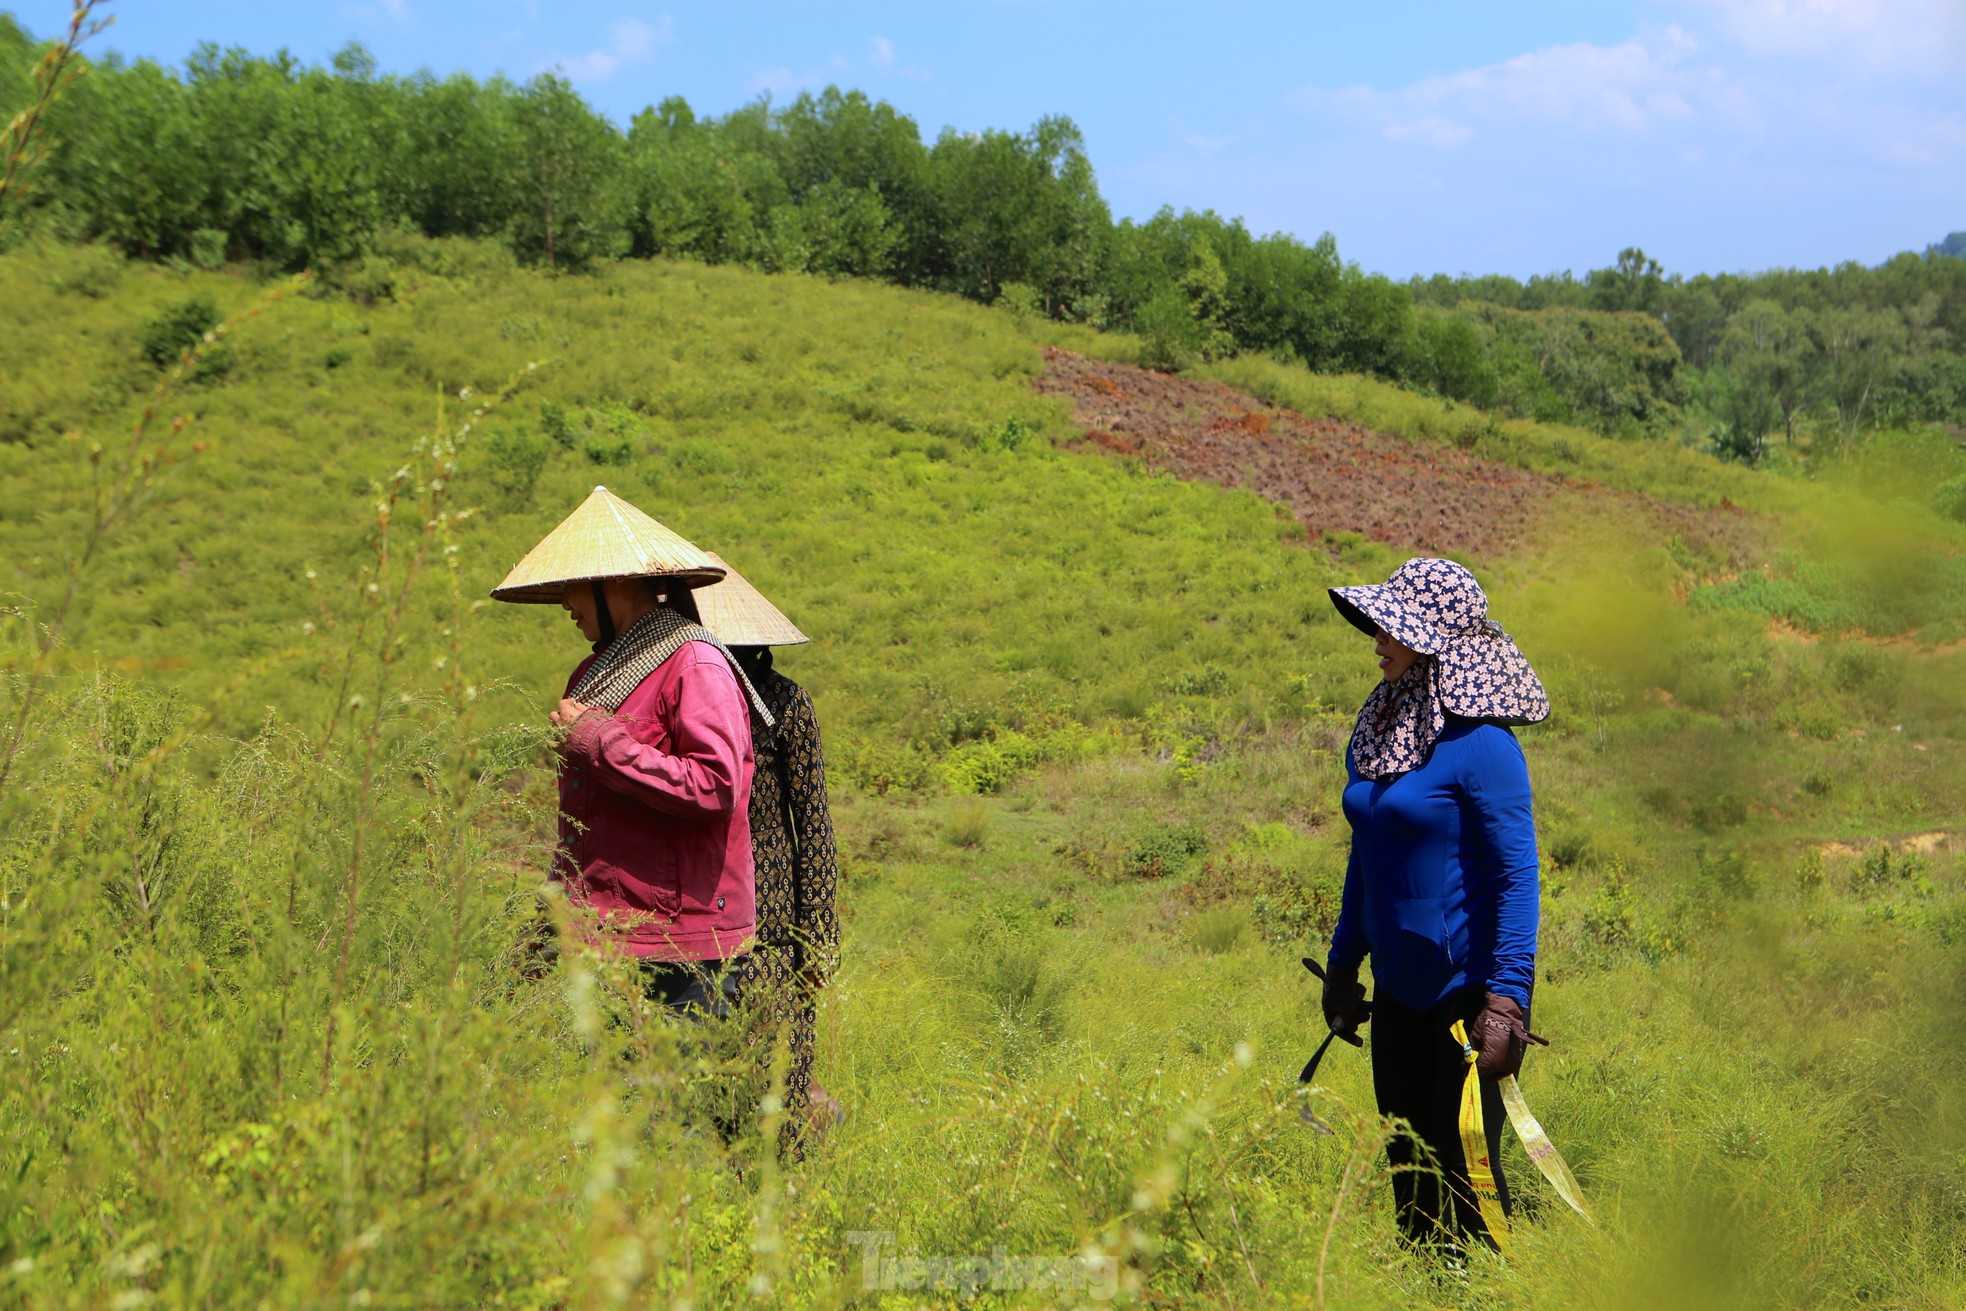 Nông dân Hà Tĩnh kiếm bộn tiền từ cây mọc hoang trên rừng - Ảnh 10.